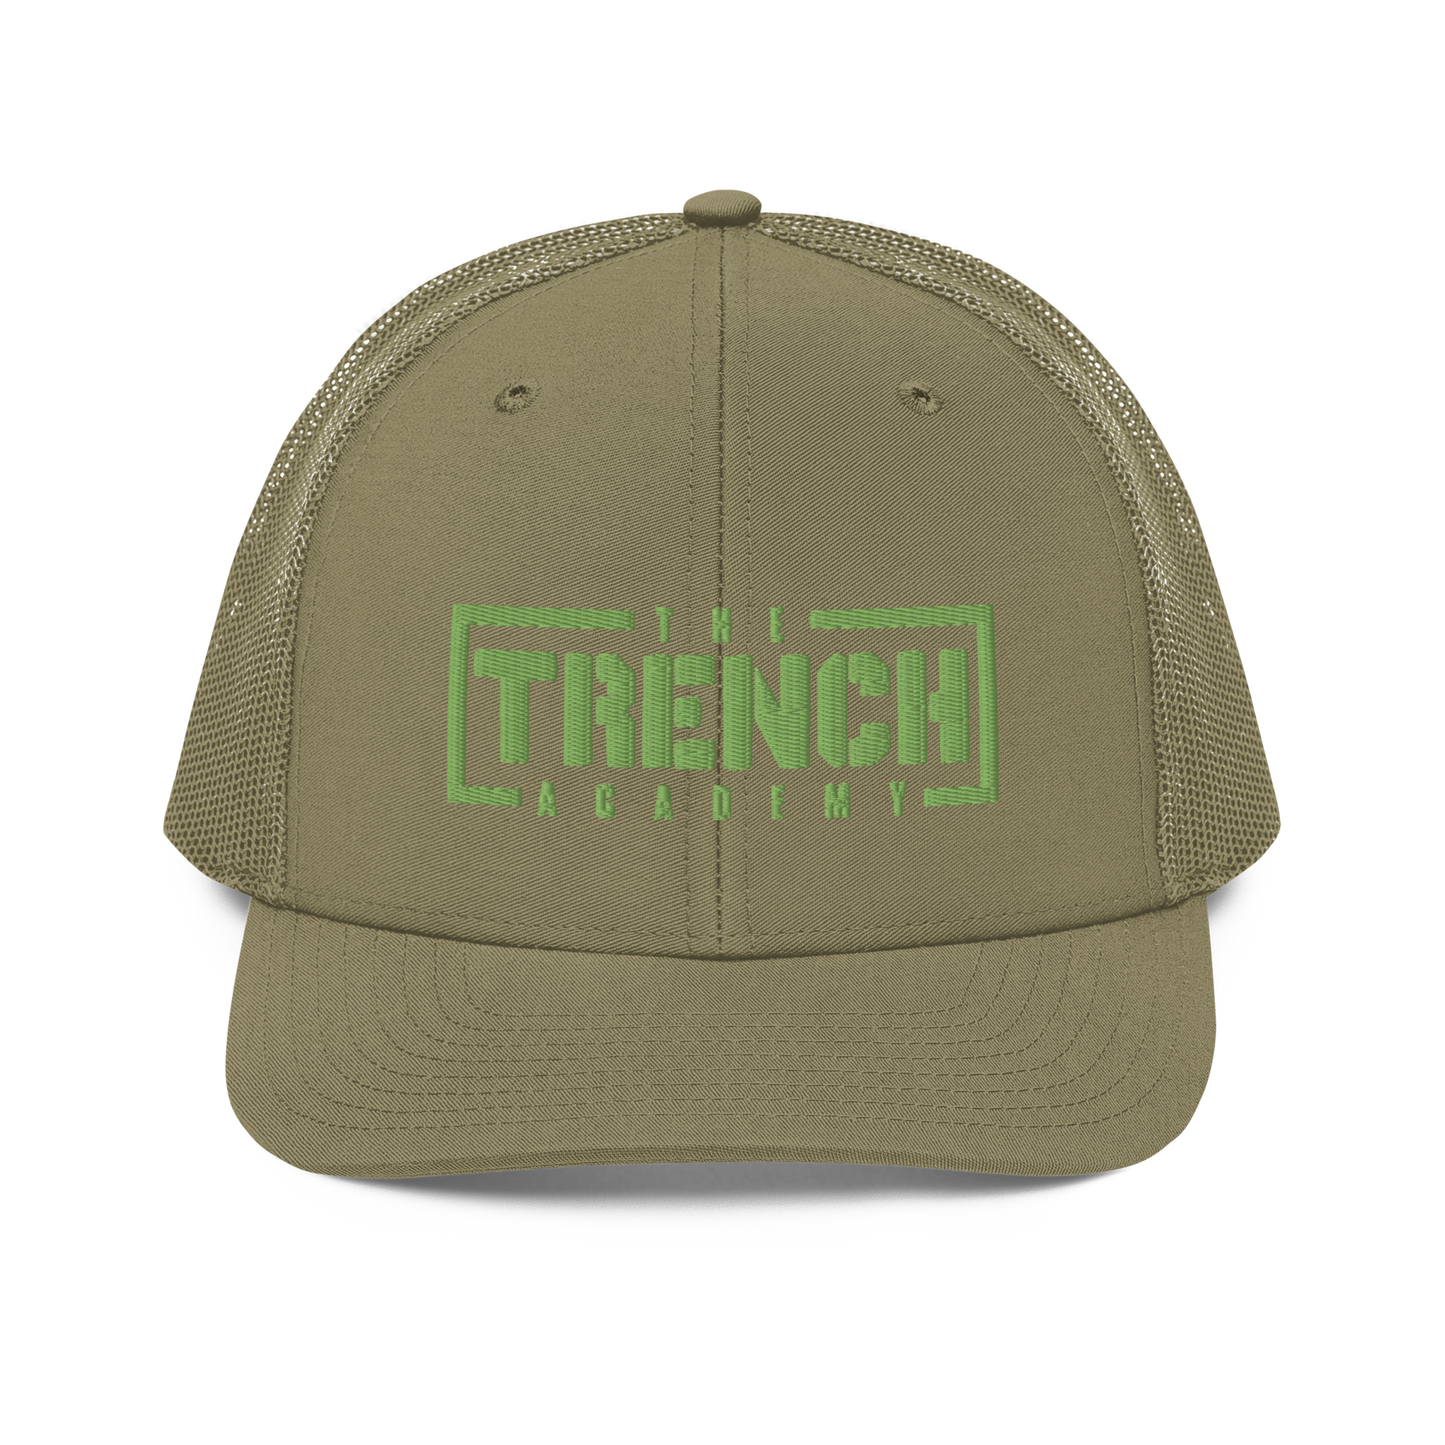 Trench | Trucker Cap